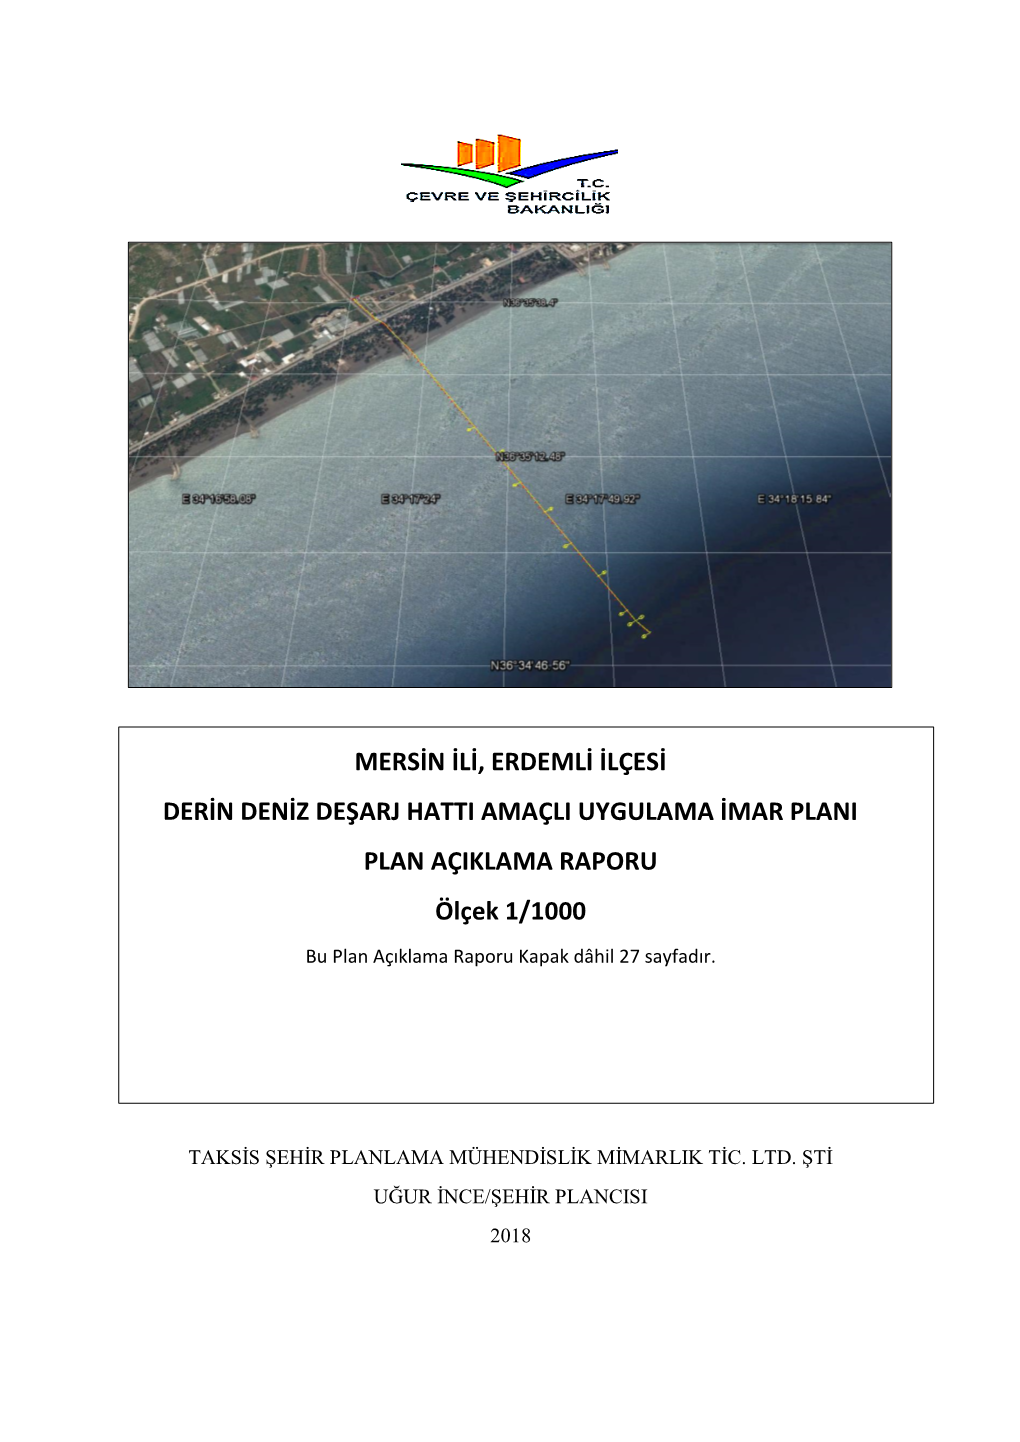 Mersin Ili, Erdemli Ilçesi Derin Deniz Deşarj Hatti Amaçli Uygulama Imar Plani Plan Açiklama Raporu